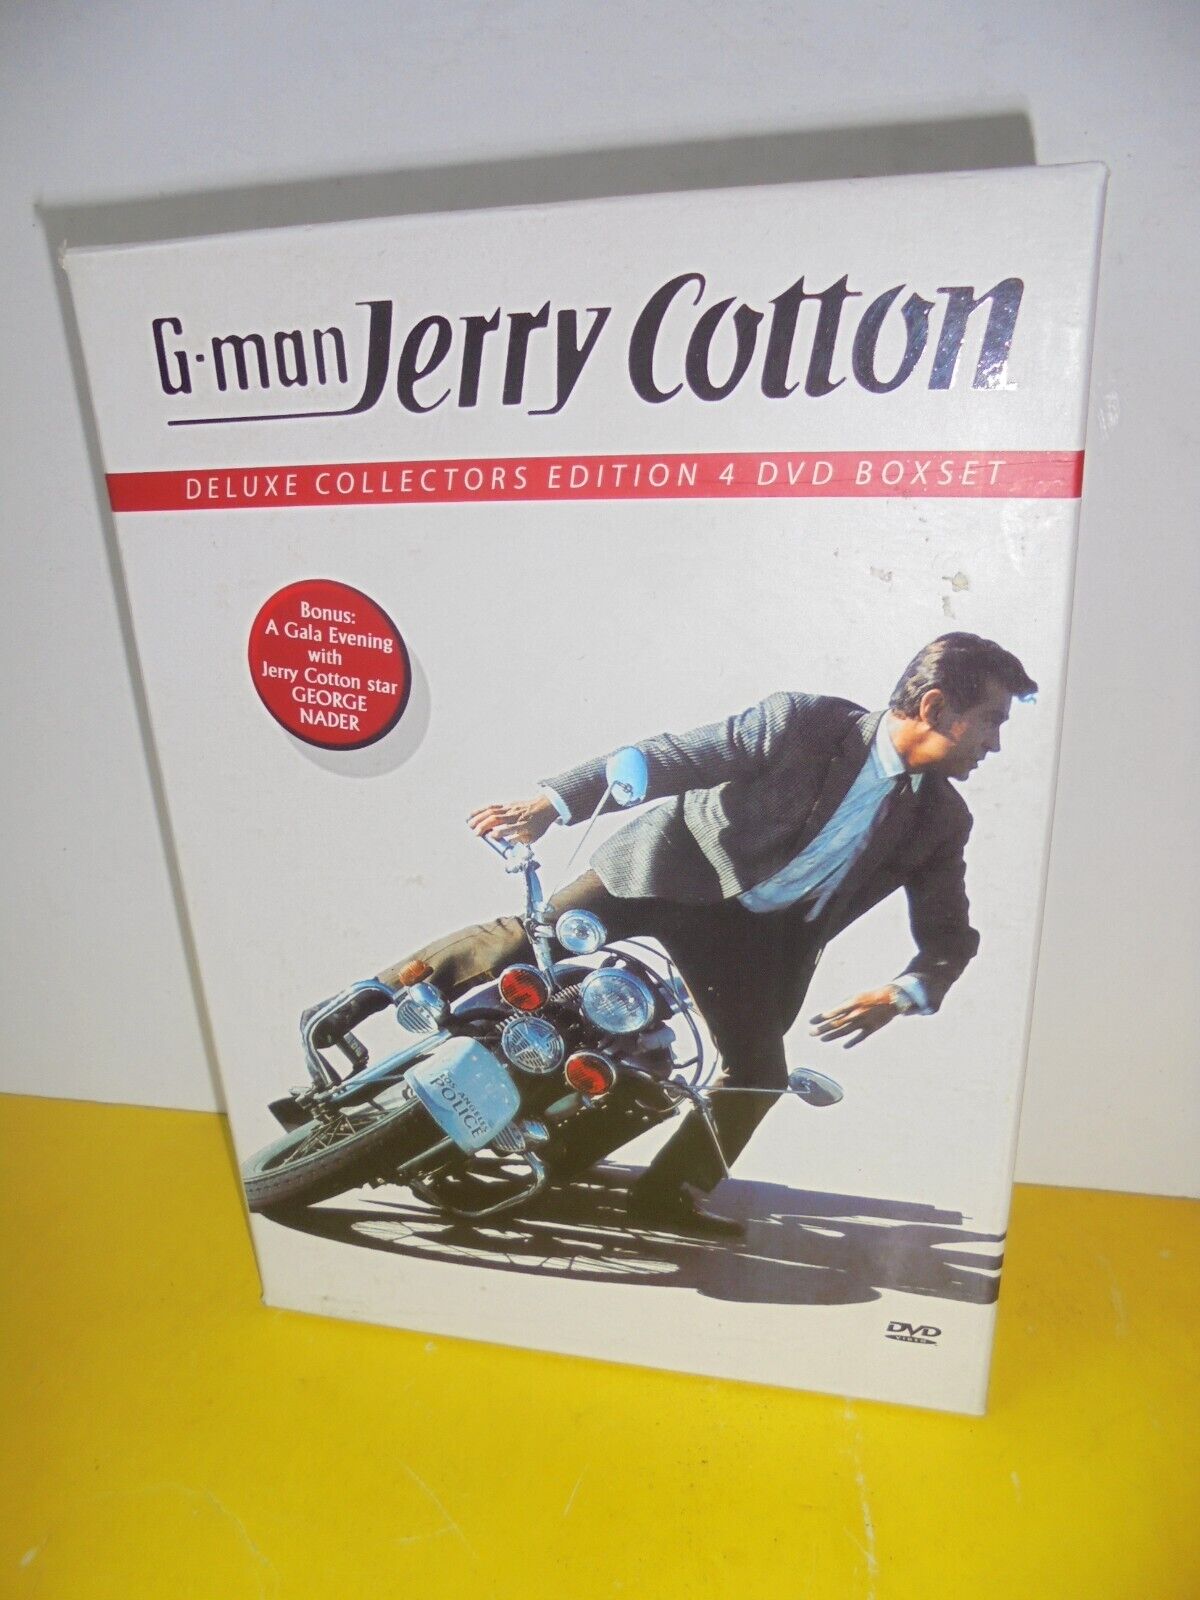 DVD BOX MIT 4 DVD'S - G-MAN JERRY COTTON